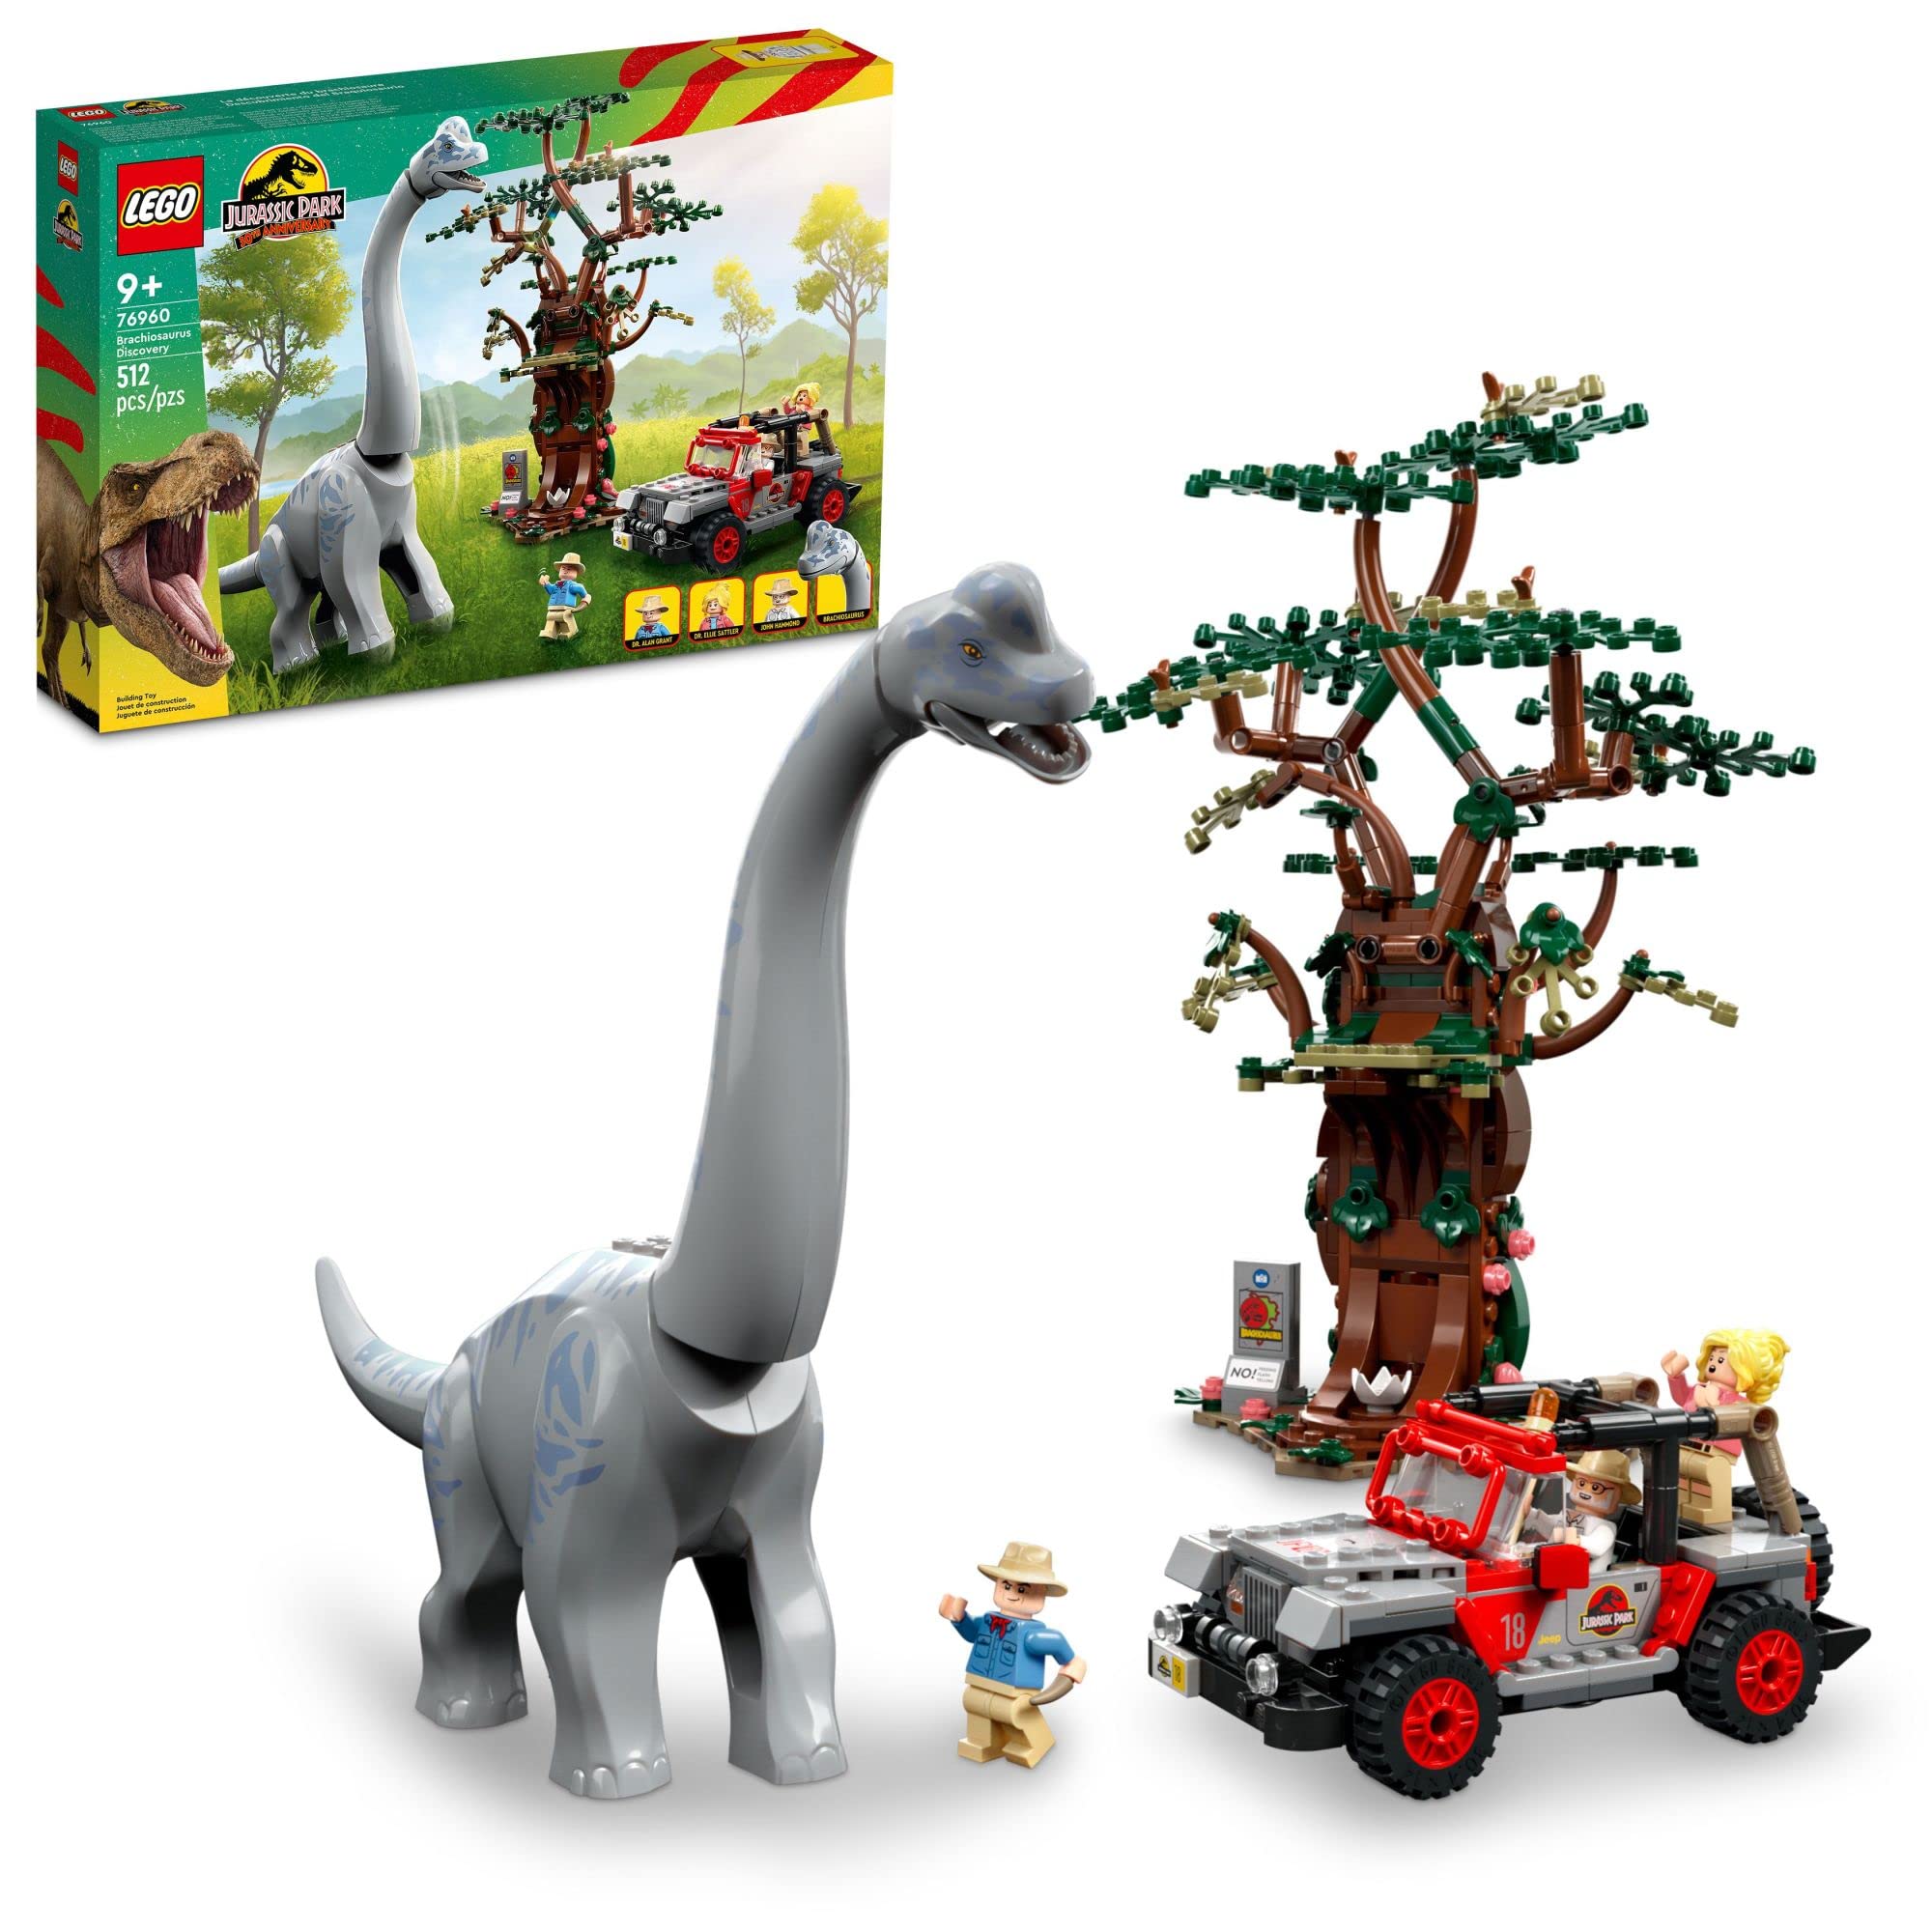 LEGO 侏罗纪世界腕龙探索 76960 侏罗纪公园 30 周年恐龙玩具；以大型恐龙人物和积木搭建的吉普牧马人汽车玩具为特色；给 9 岁以上儿童的有趣礼物创意